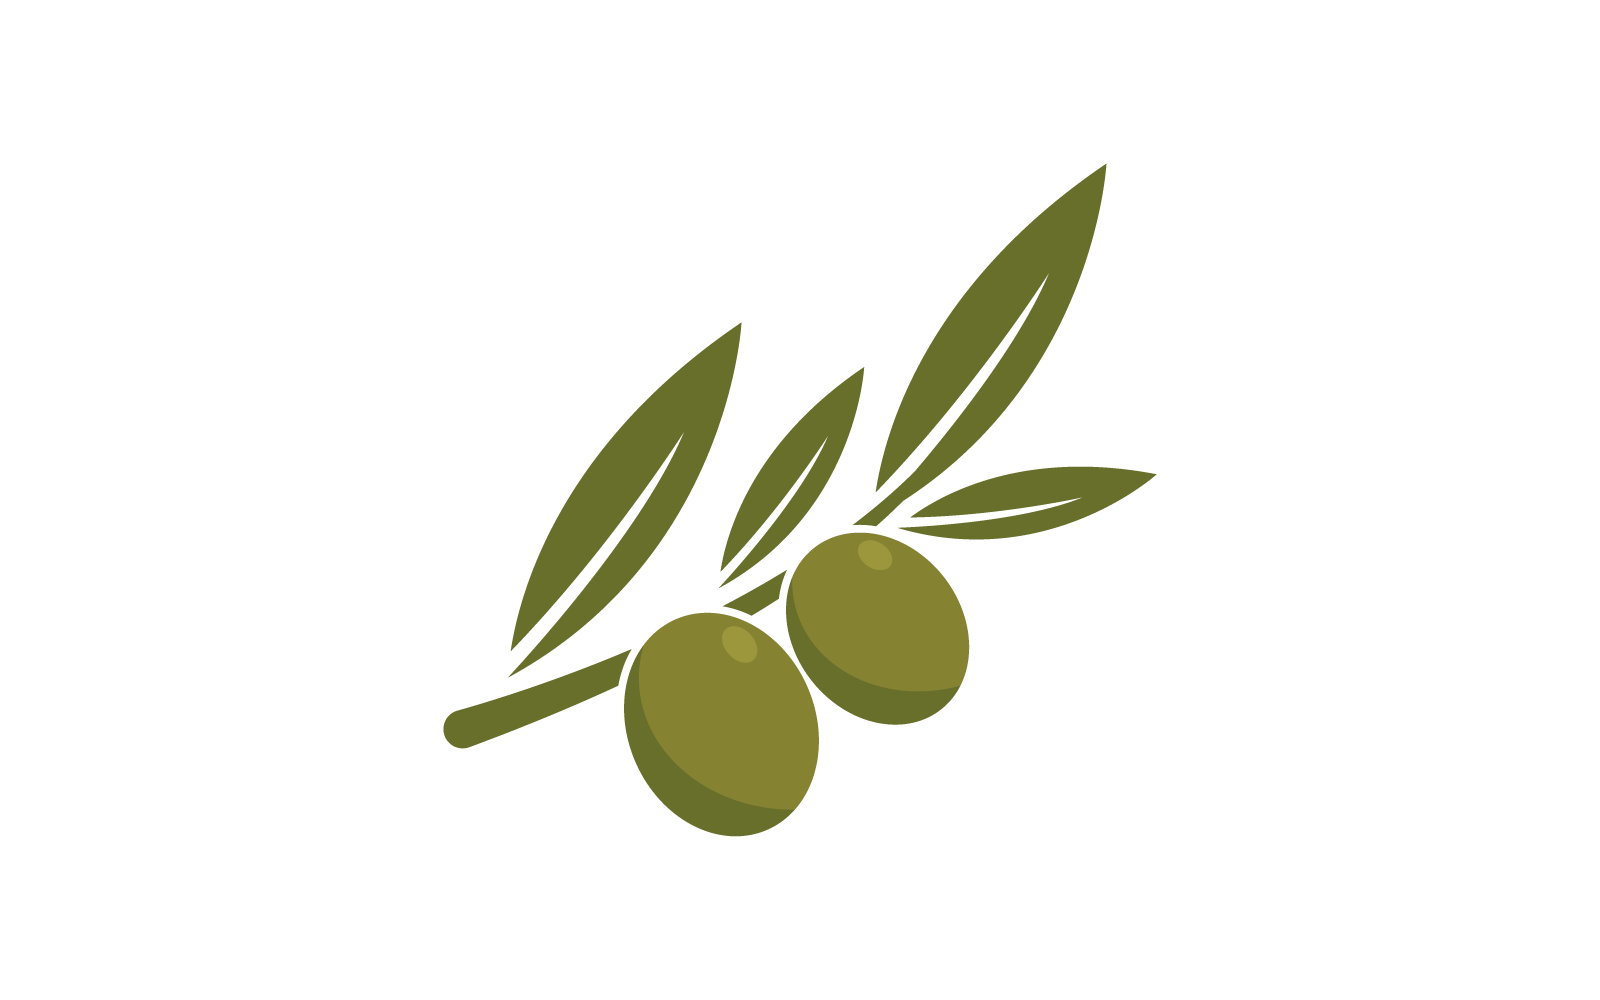 Olive logo design illustration vector template